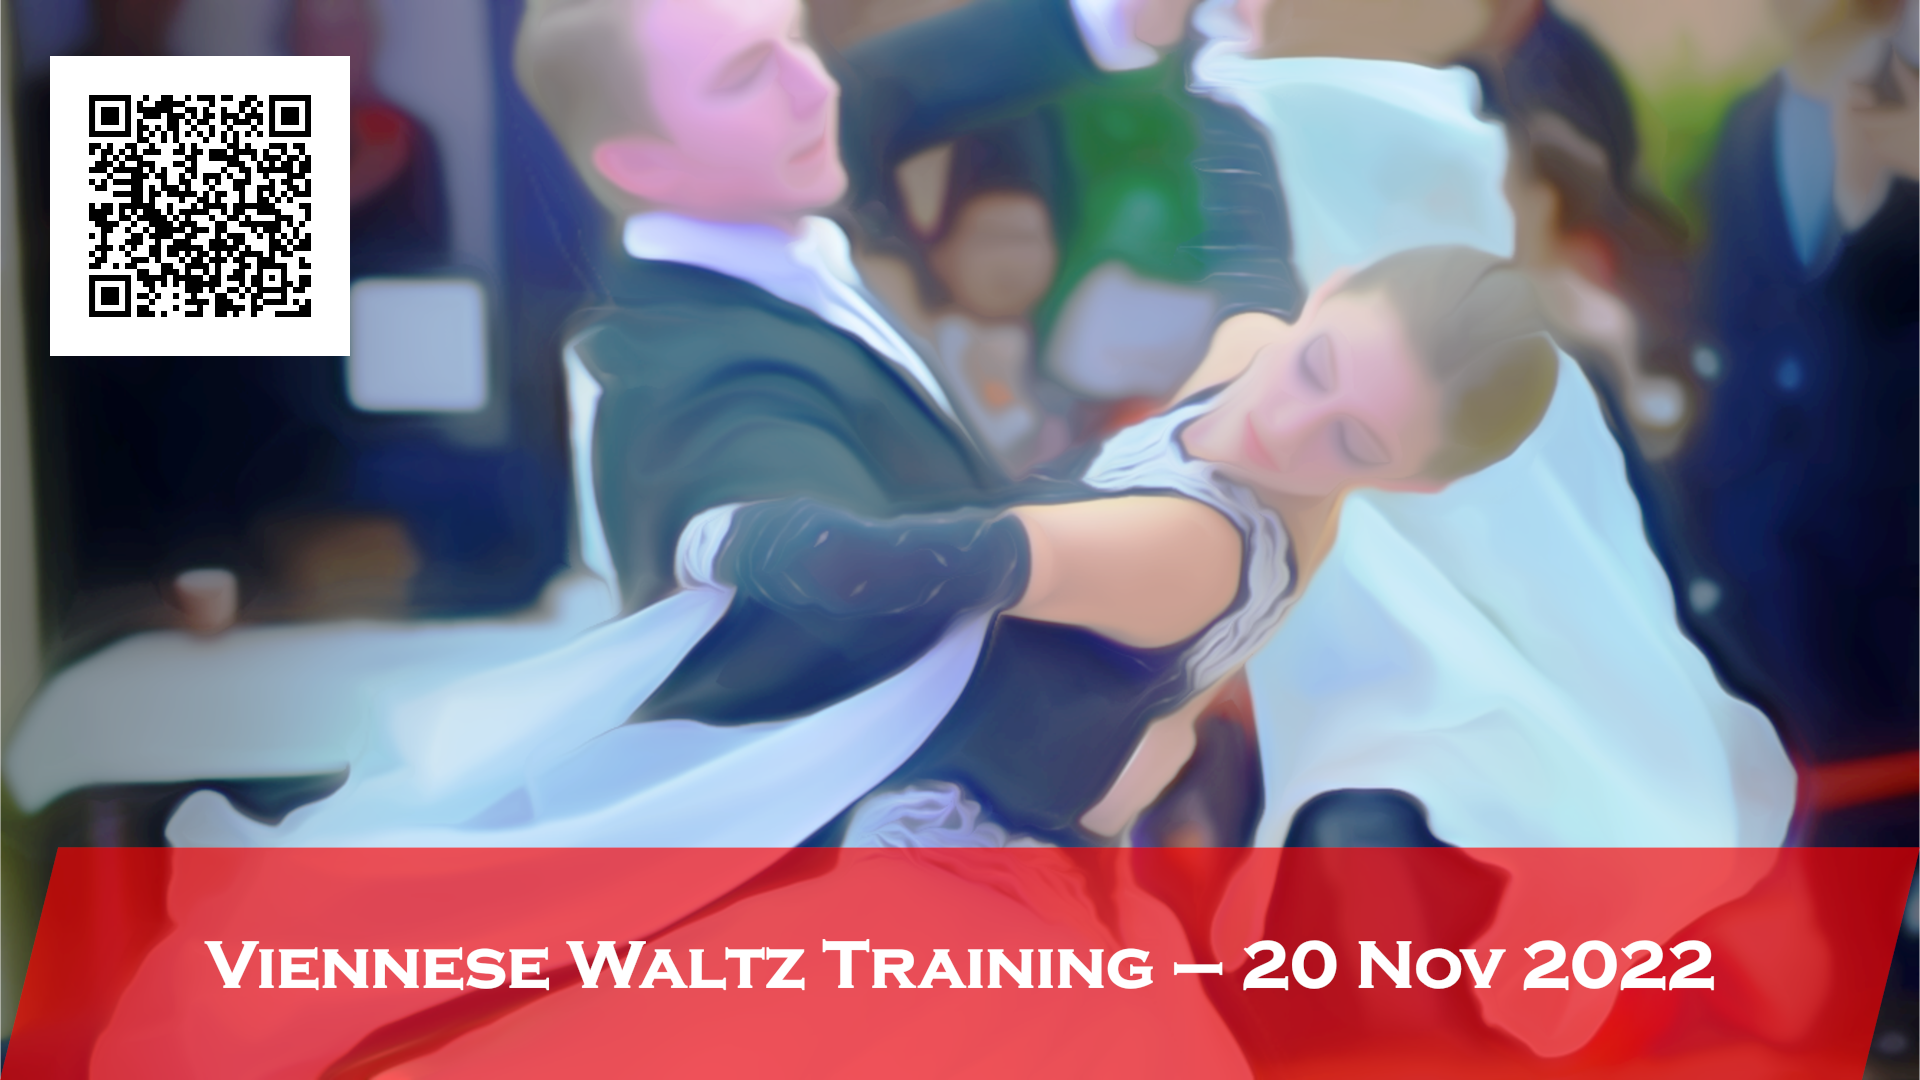 Viennese Waltz Training 20 Nov 2022 1920x1080 qr-code